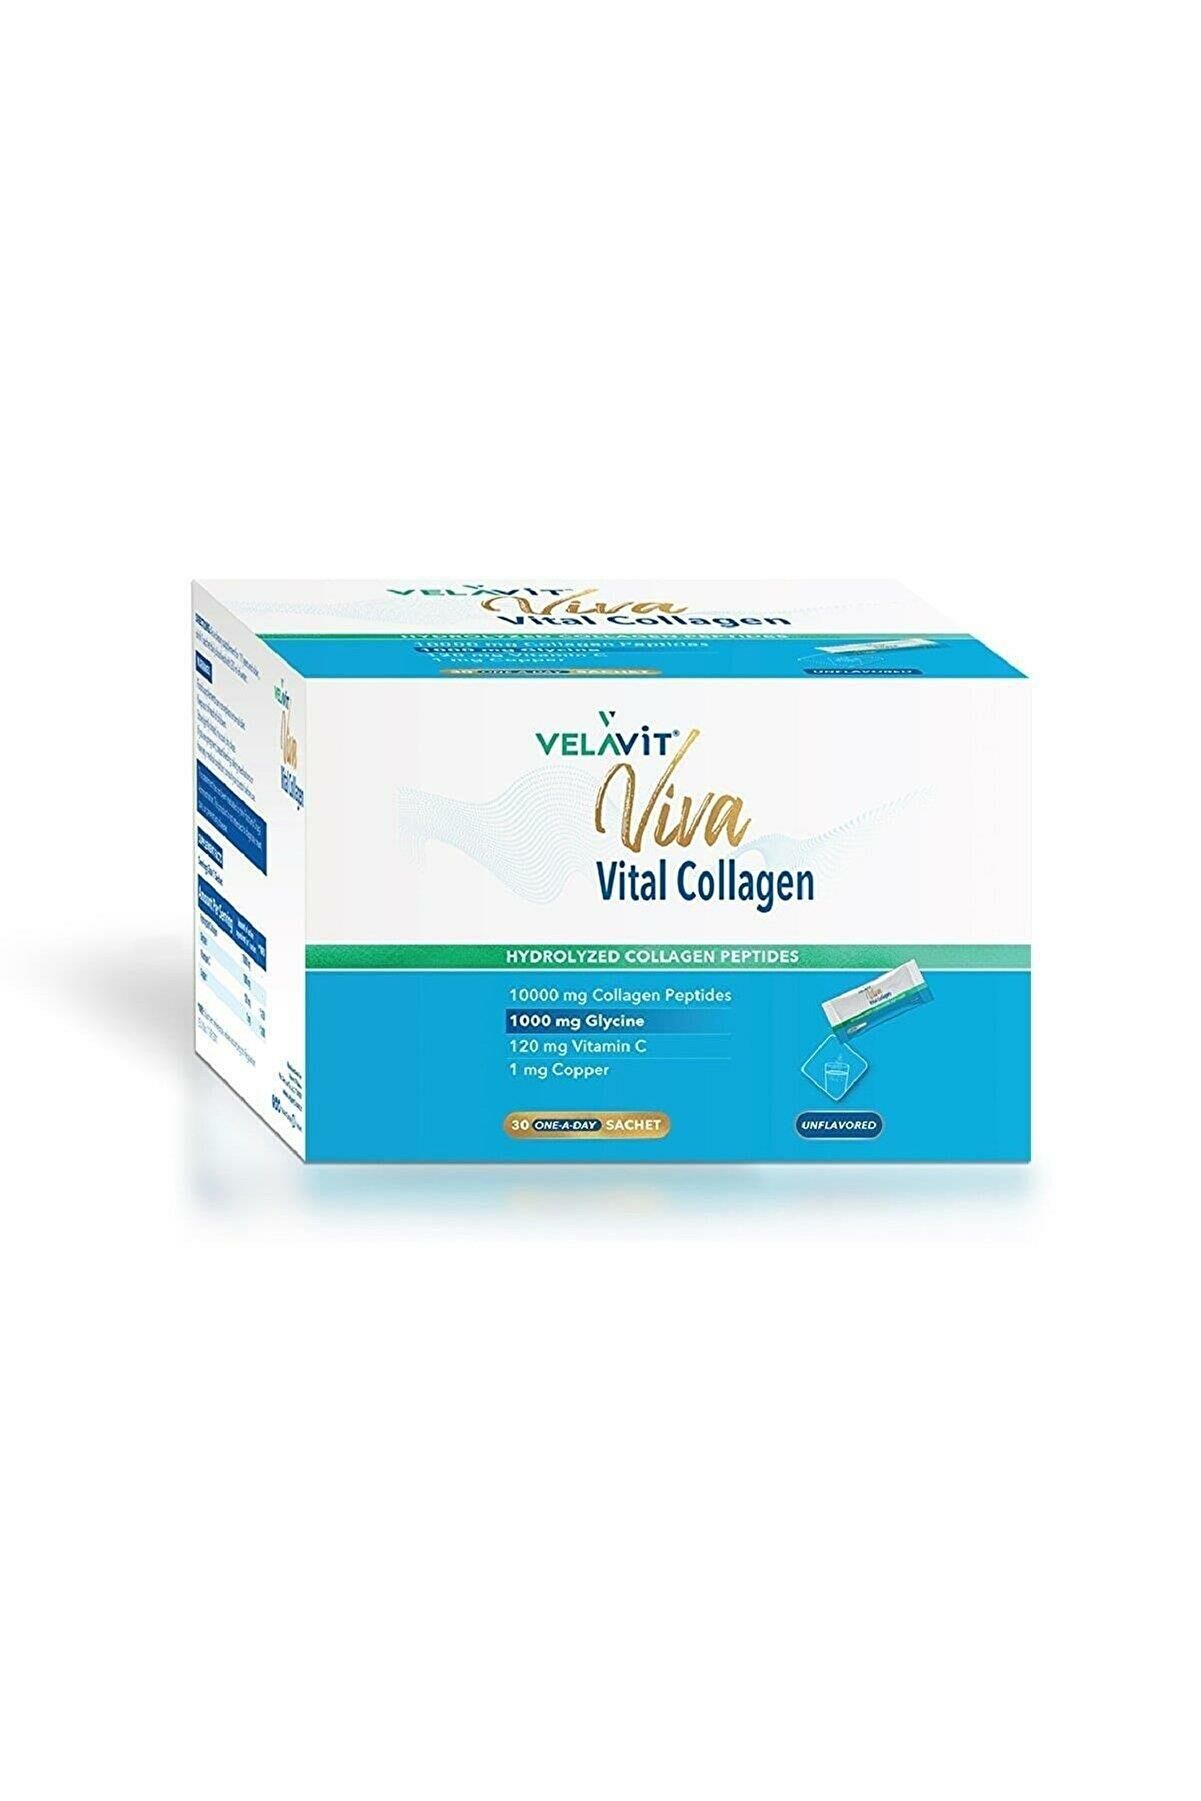 Velavit Viva Vital Collagen Toz Takviye Edici Gıda 30 Saşe